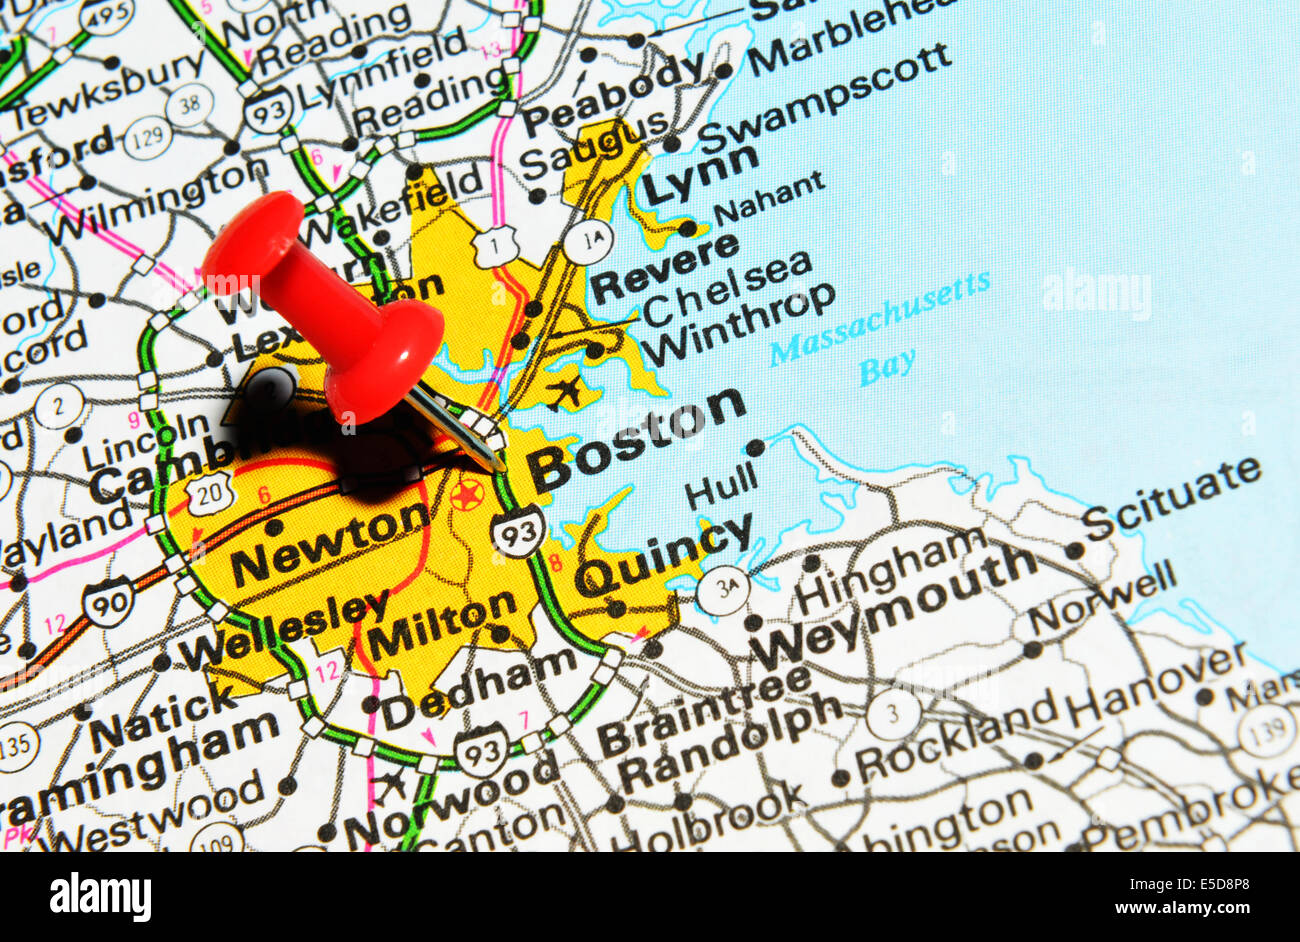 Где находится бостон. Штат Бостон на карте. Бостон на карте США. Бостон город в США на карте. Где находится Бостон на карте США.